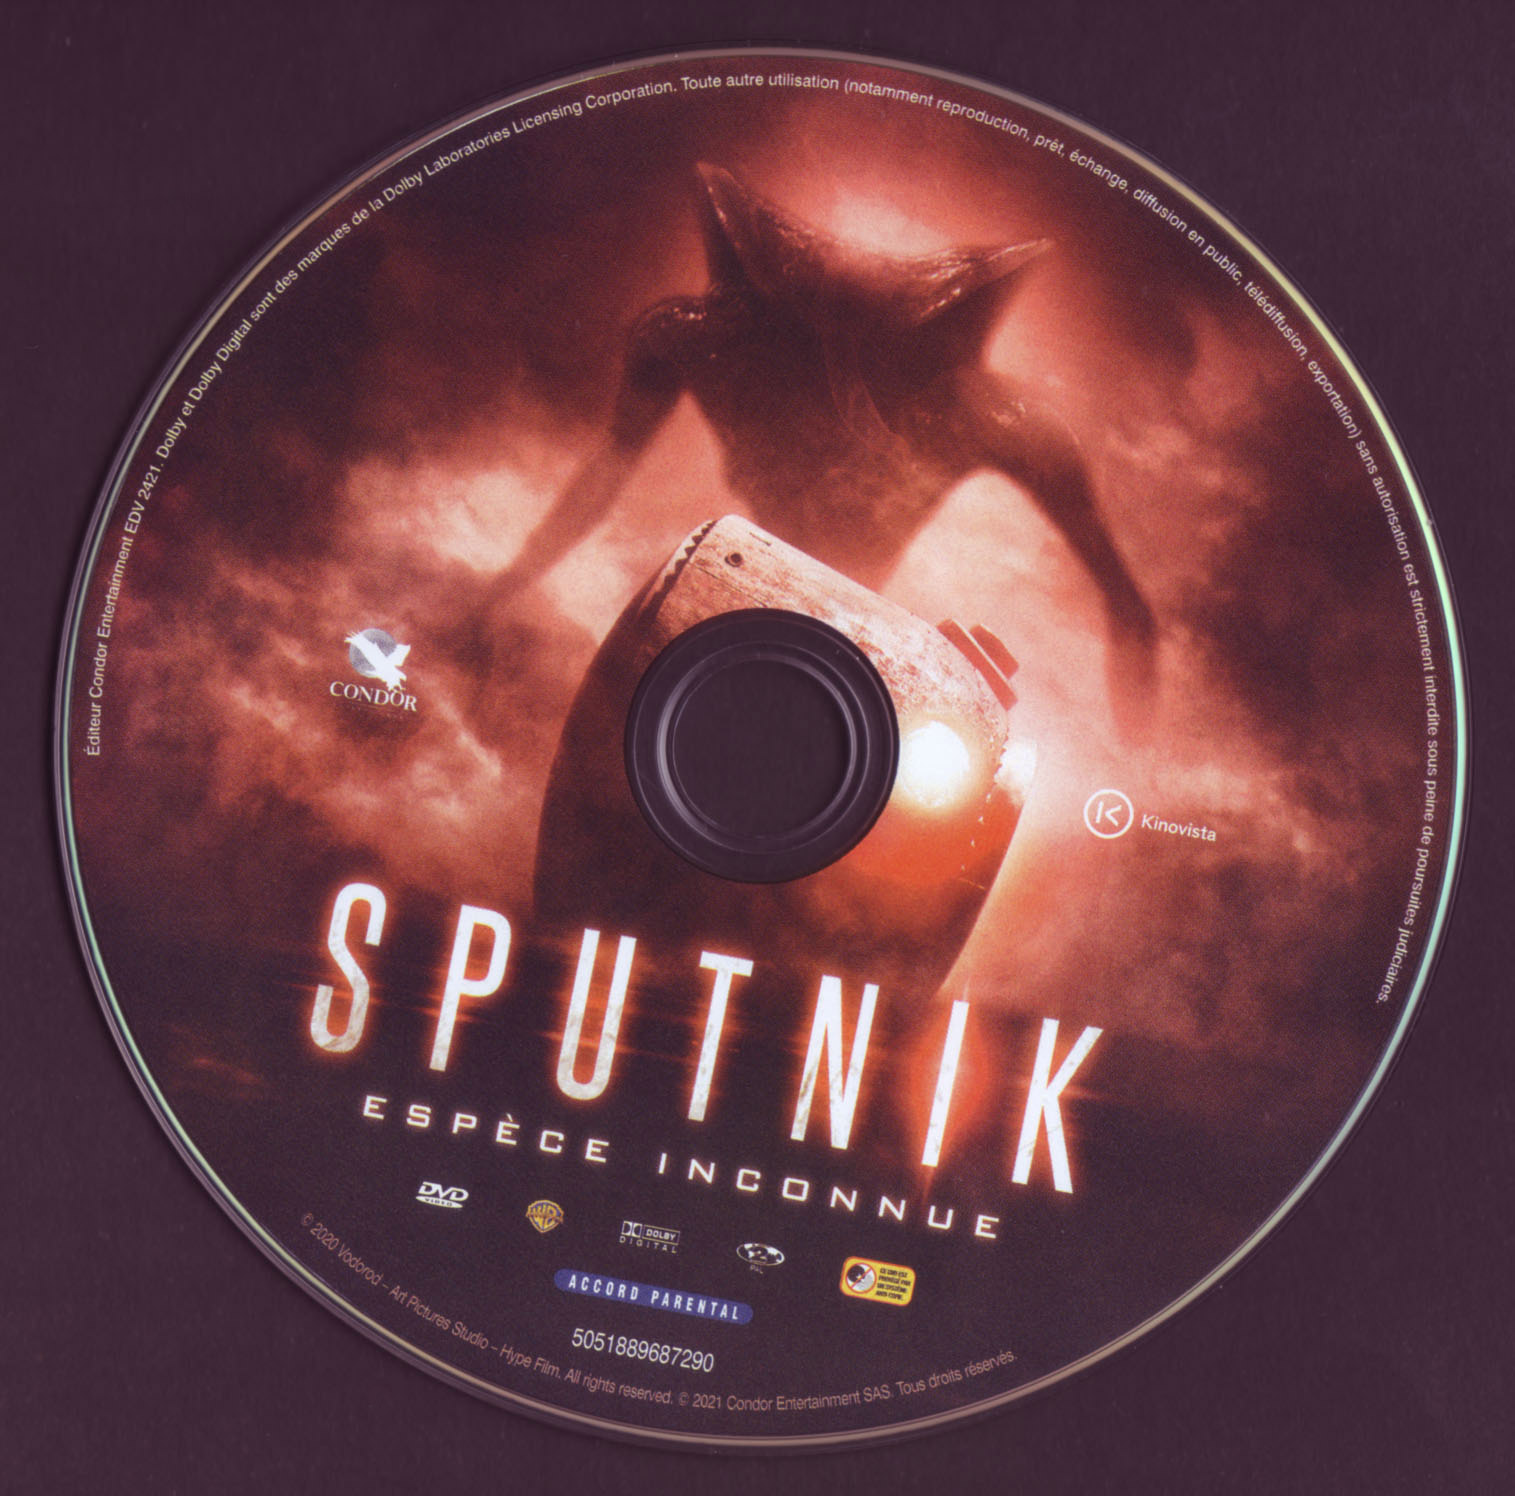 Sputnik, espece inconnue